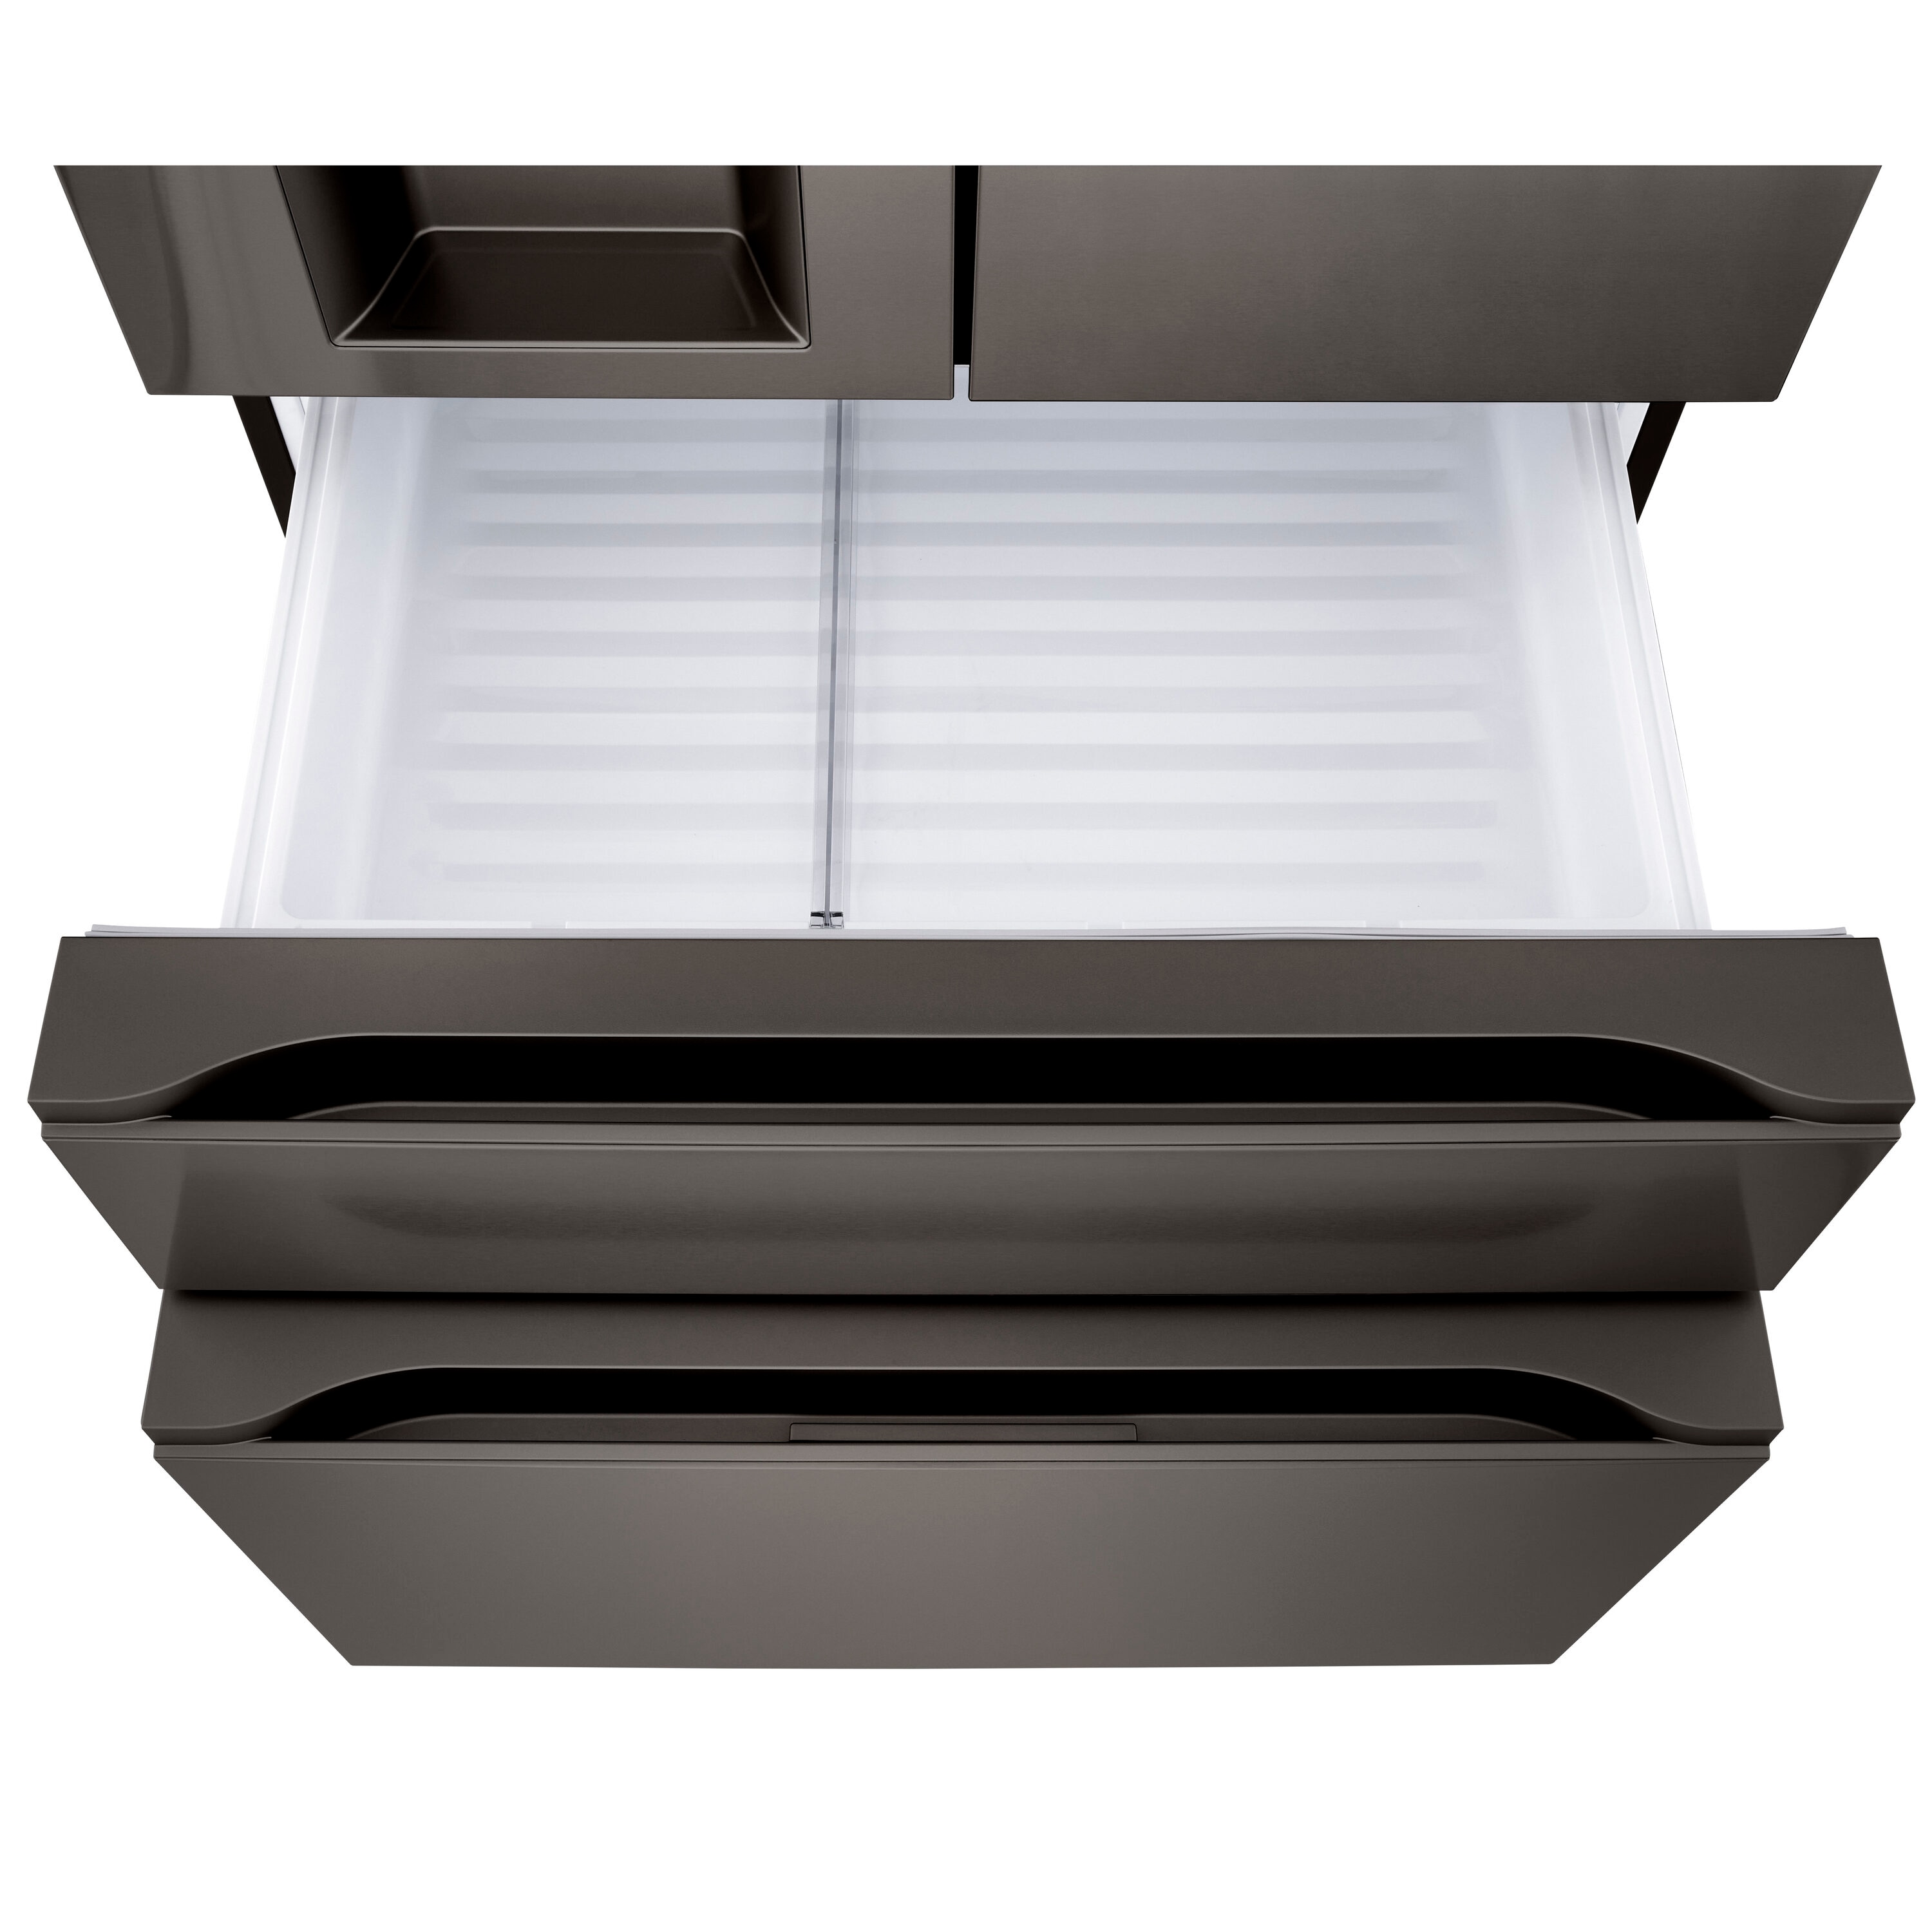 LG 2-Piece Kitchen Package with 22.3 Cu. Ft 4-Door French Door Refrigerator  and Single Door Freezer in Black Stainless Steel